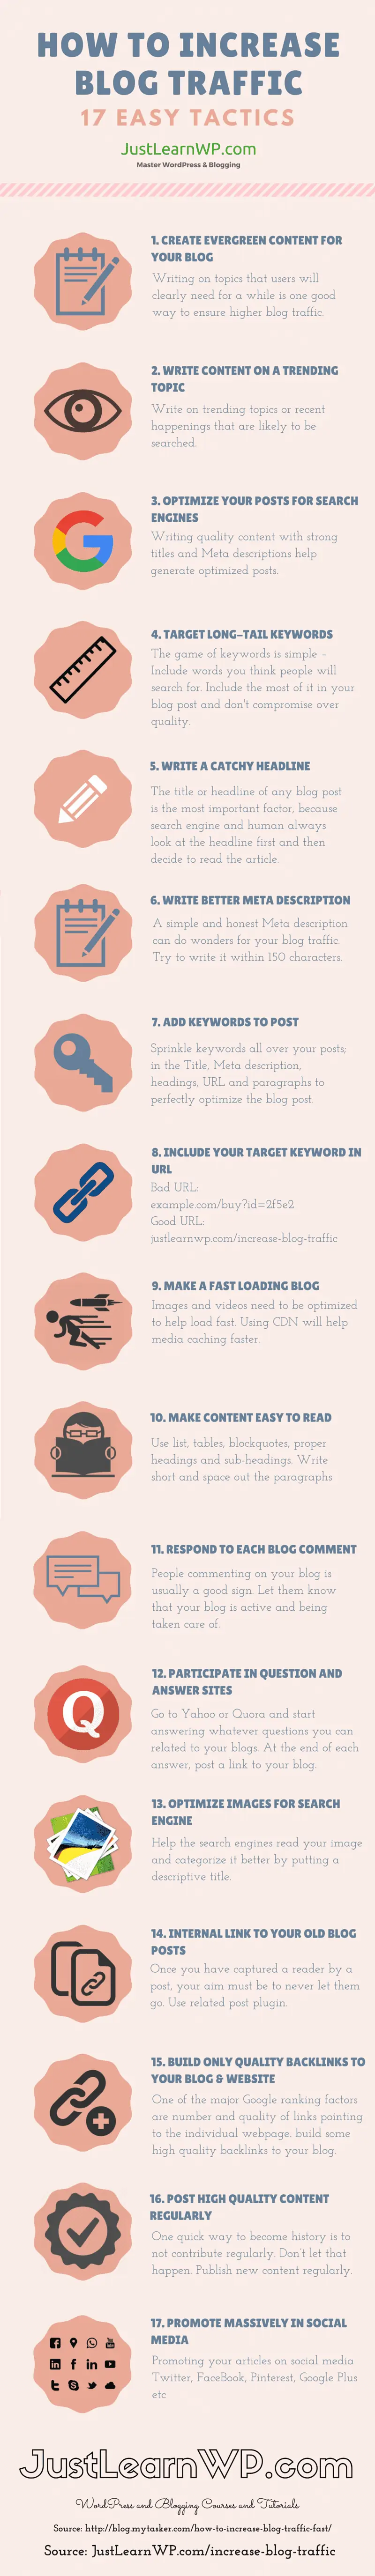 17 conseils pour augmenter le trafic de votre blog (infographie)